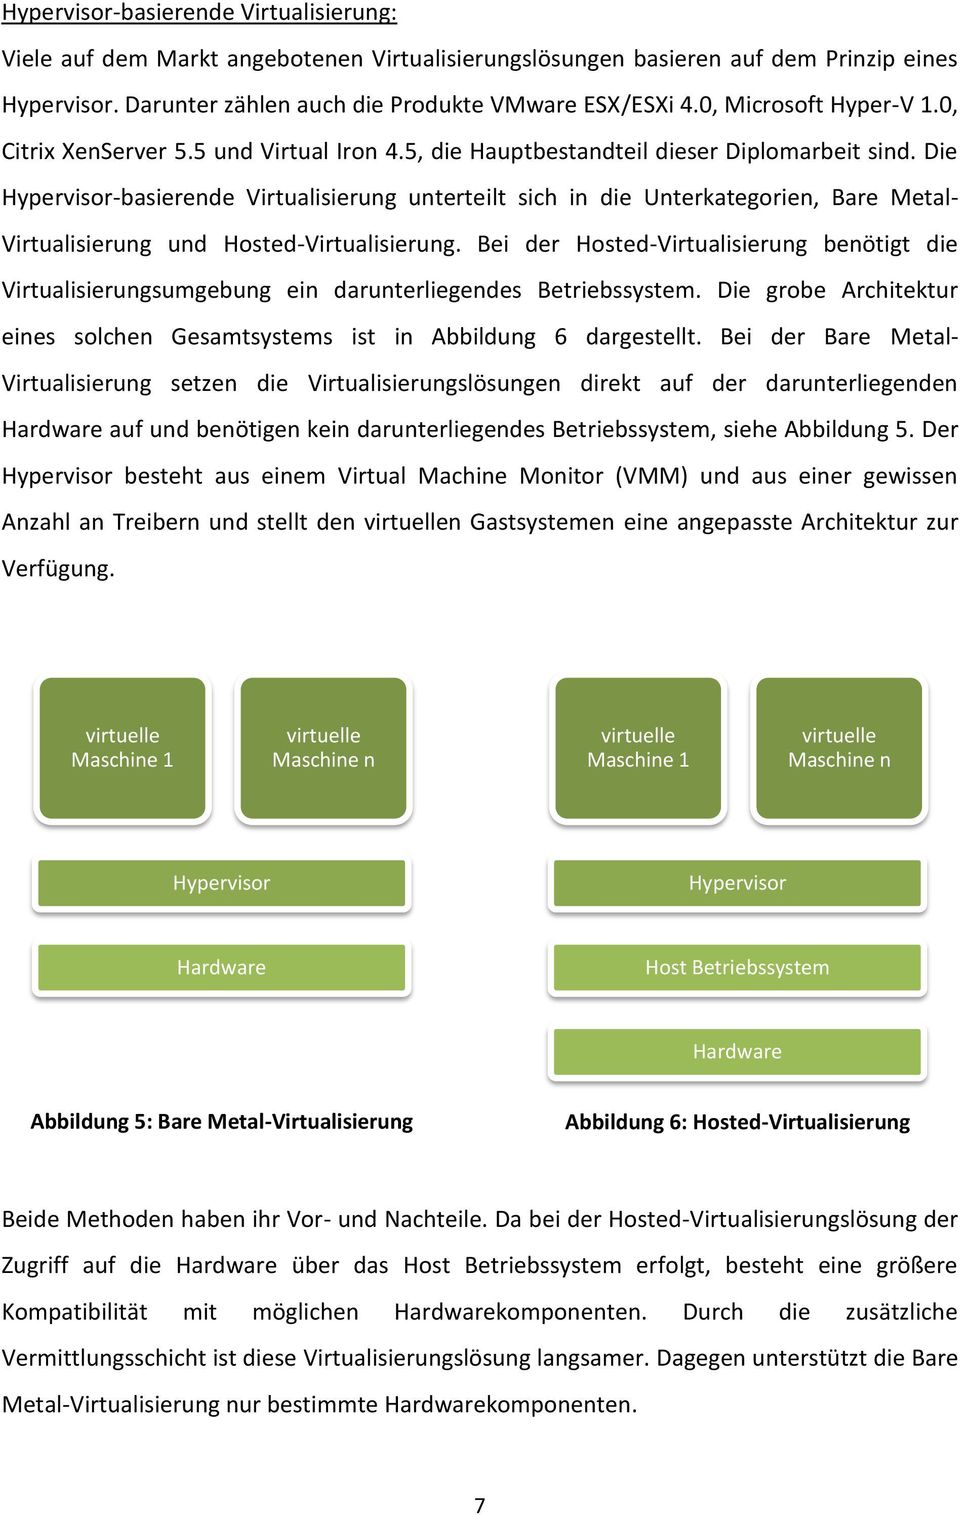 Die Hypervisor-basierende Virtualisierung unterteilt sich in die Unterkategorien, Bare Metal- Virtualisierung und Hosted-Virtualisierung.